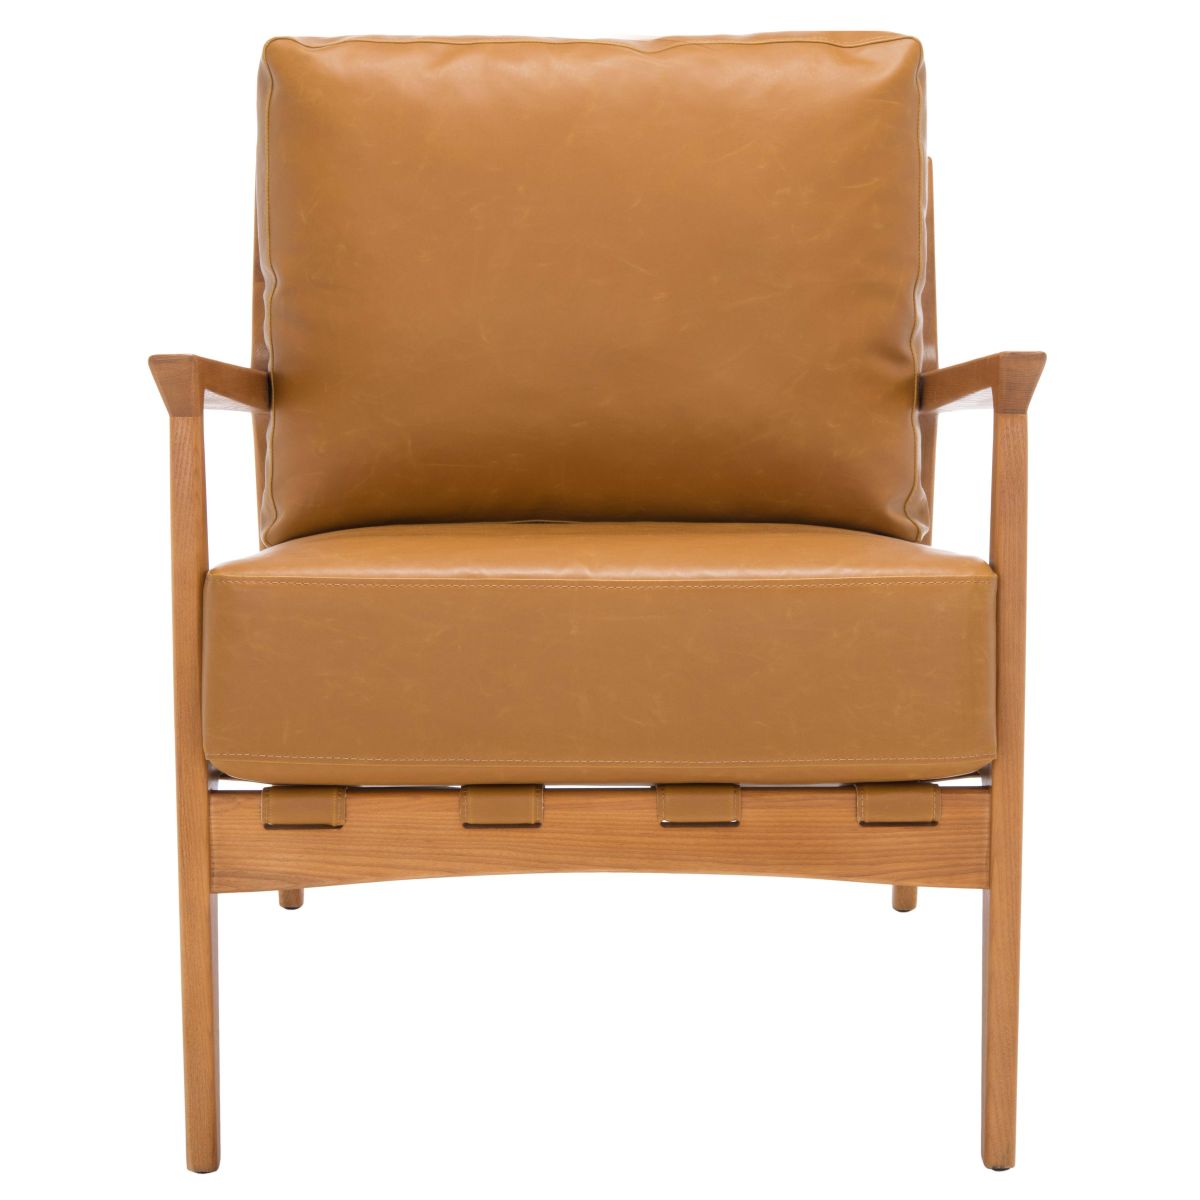 Safavieh Danisia Accent Chair , ACH4518 - Caramel / Natural